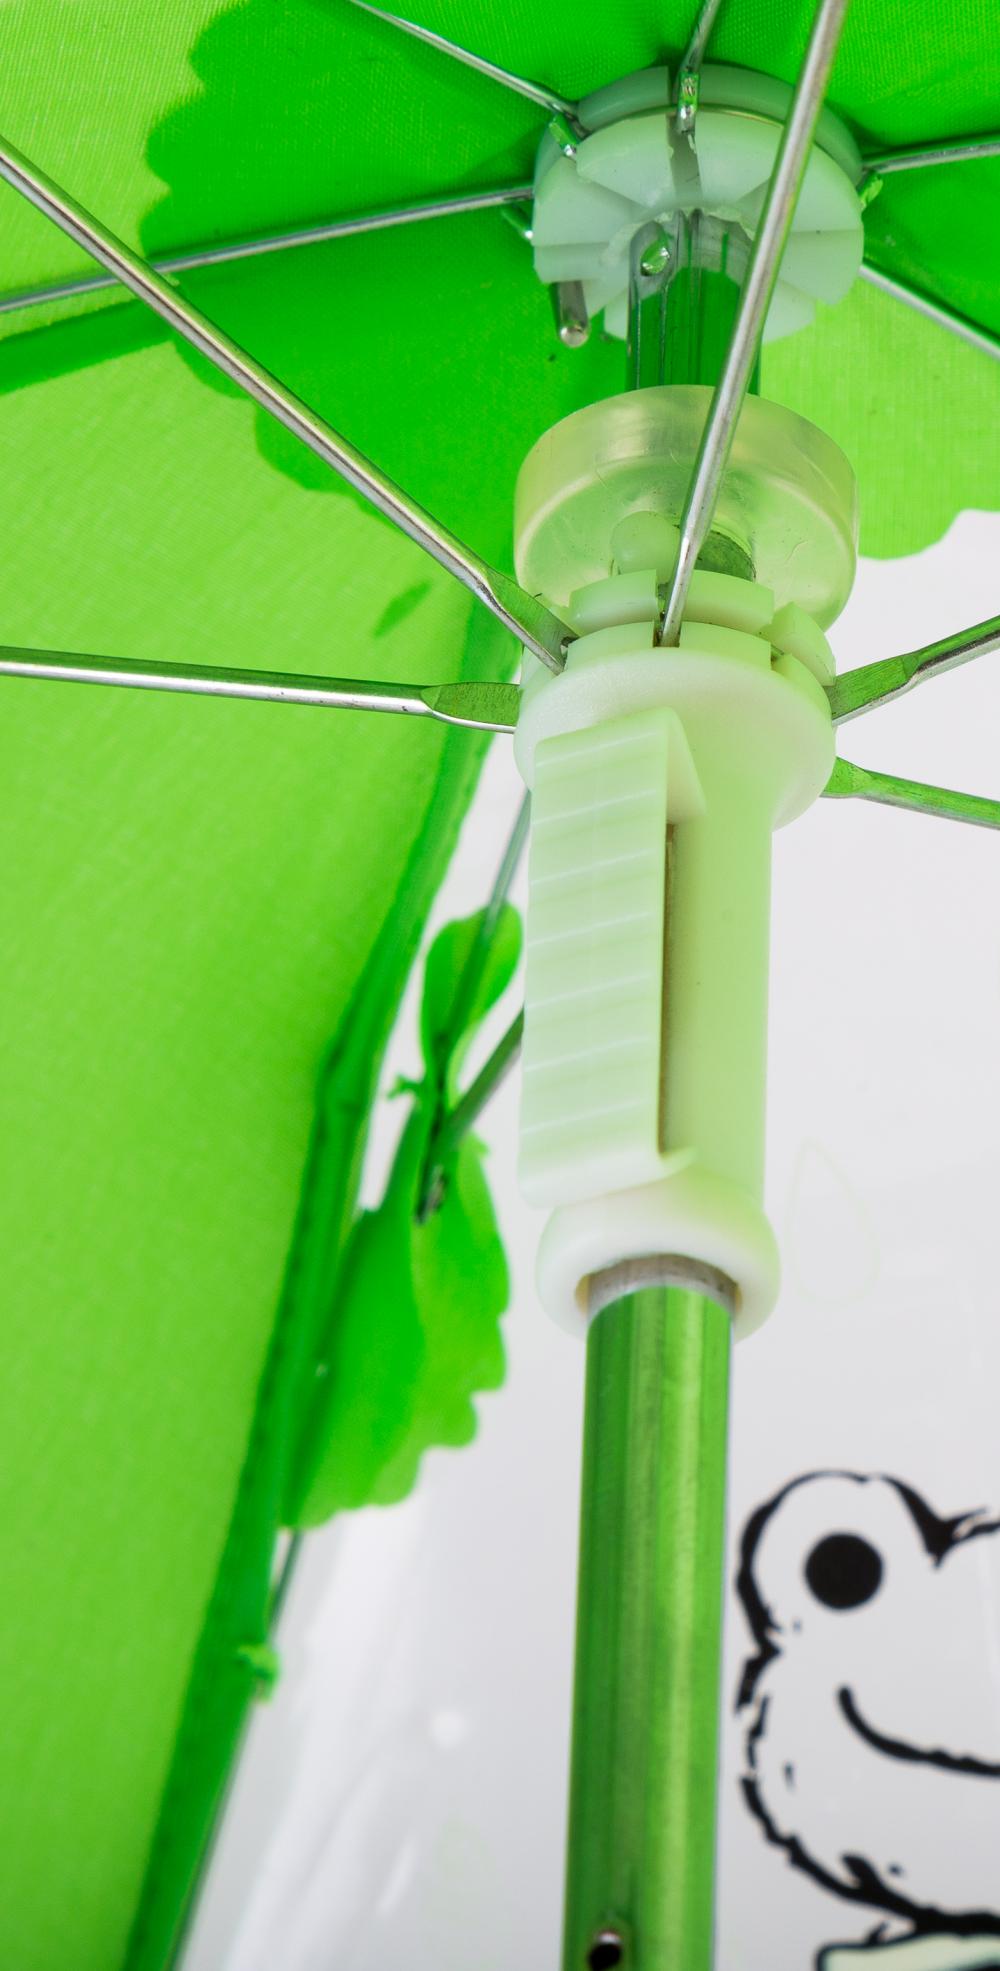 Payung Mainan Miniatur Layar Dicetak Transparan